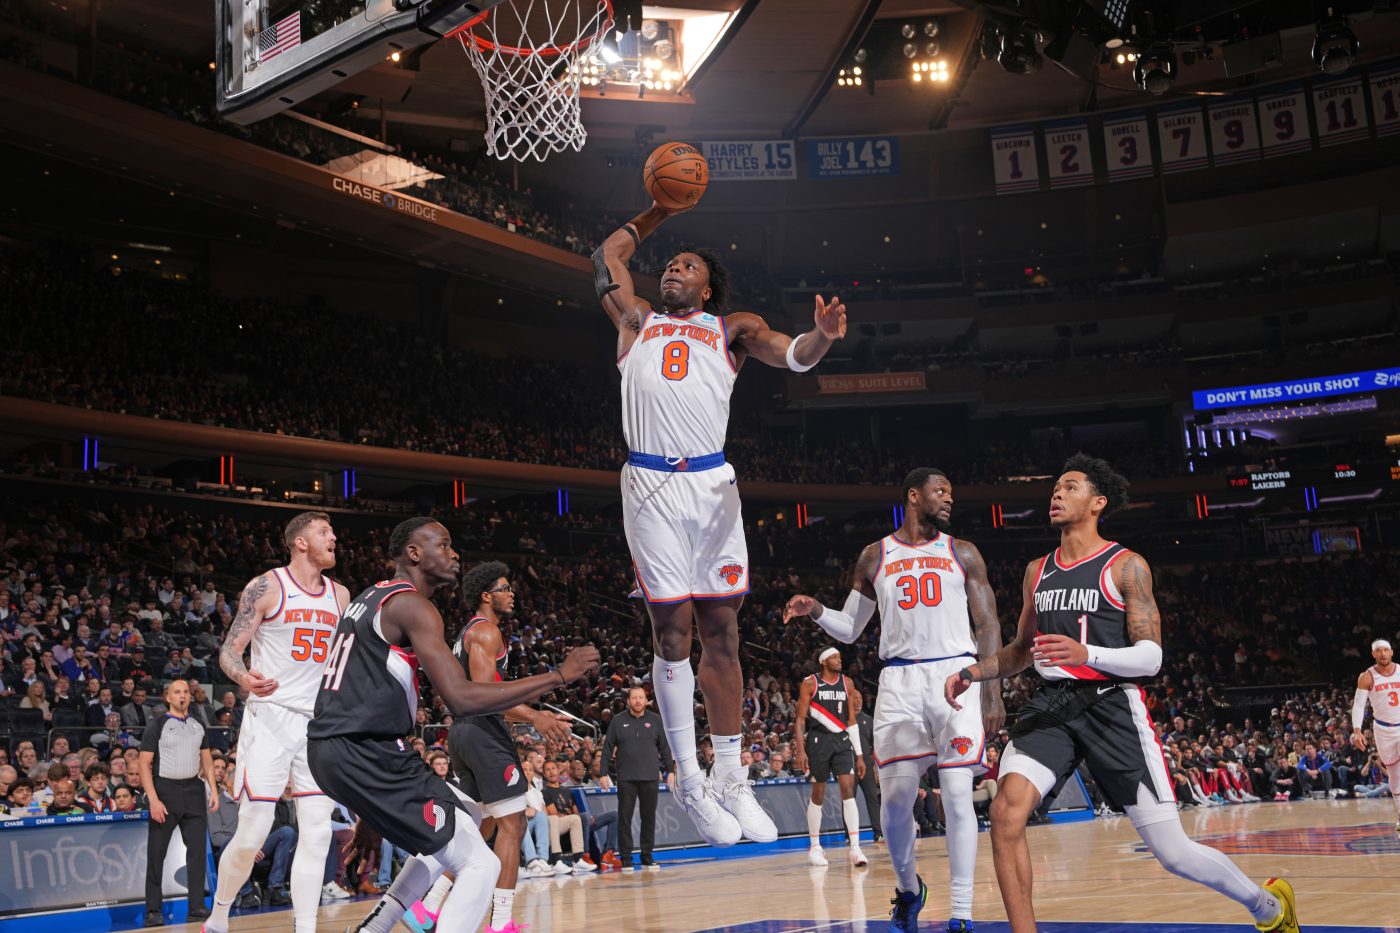 Analiza NBA: Knicks i Cavs dominują w styczniu – czy to prognostyk na resztę sezonu?